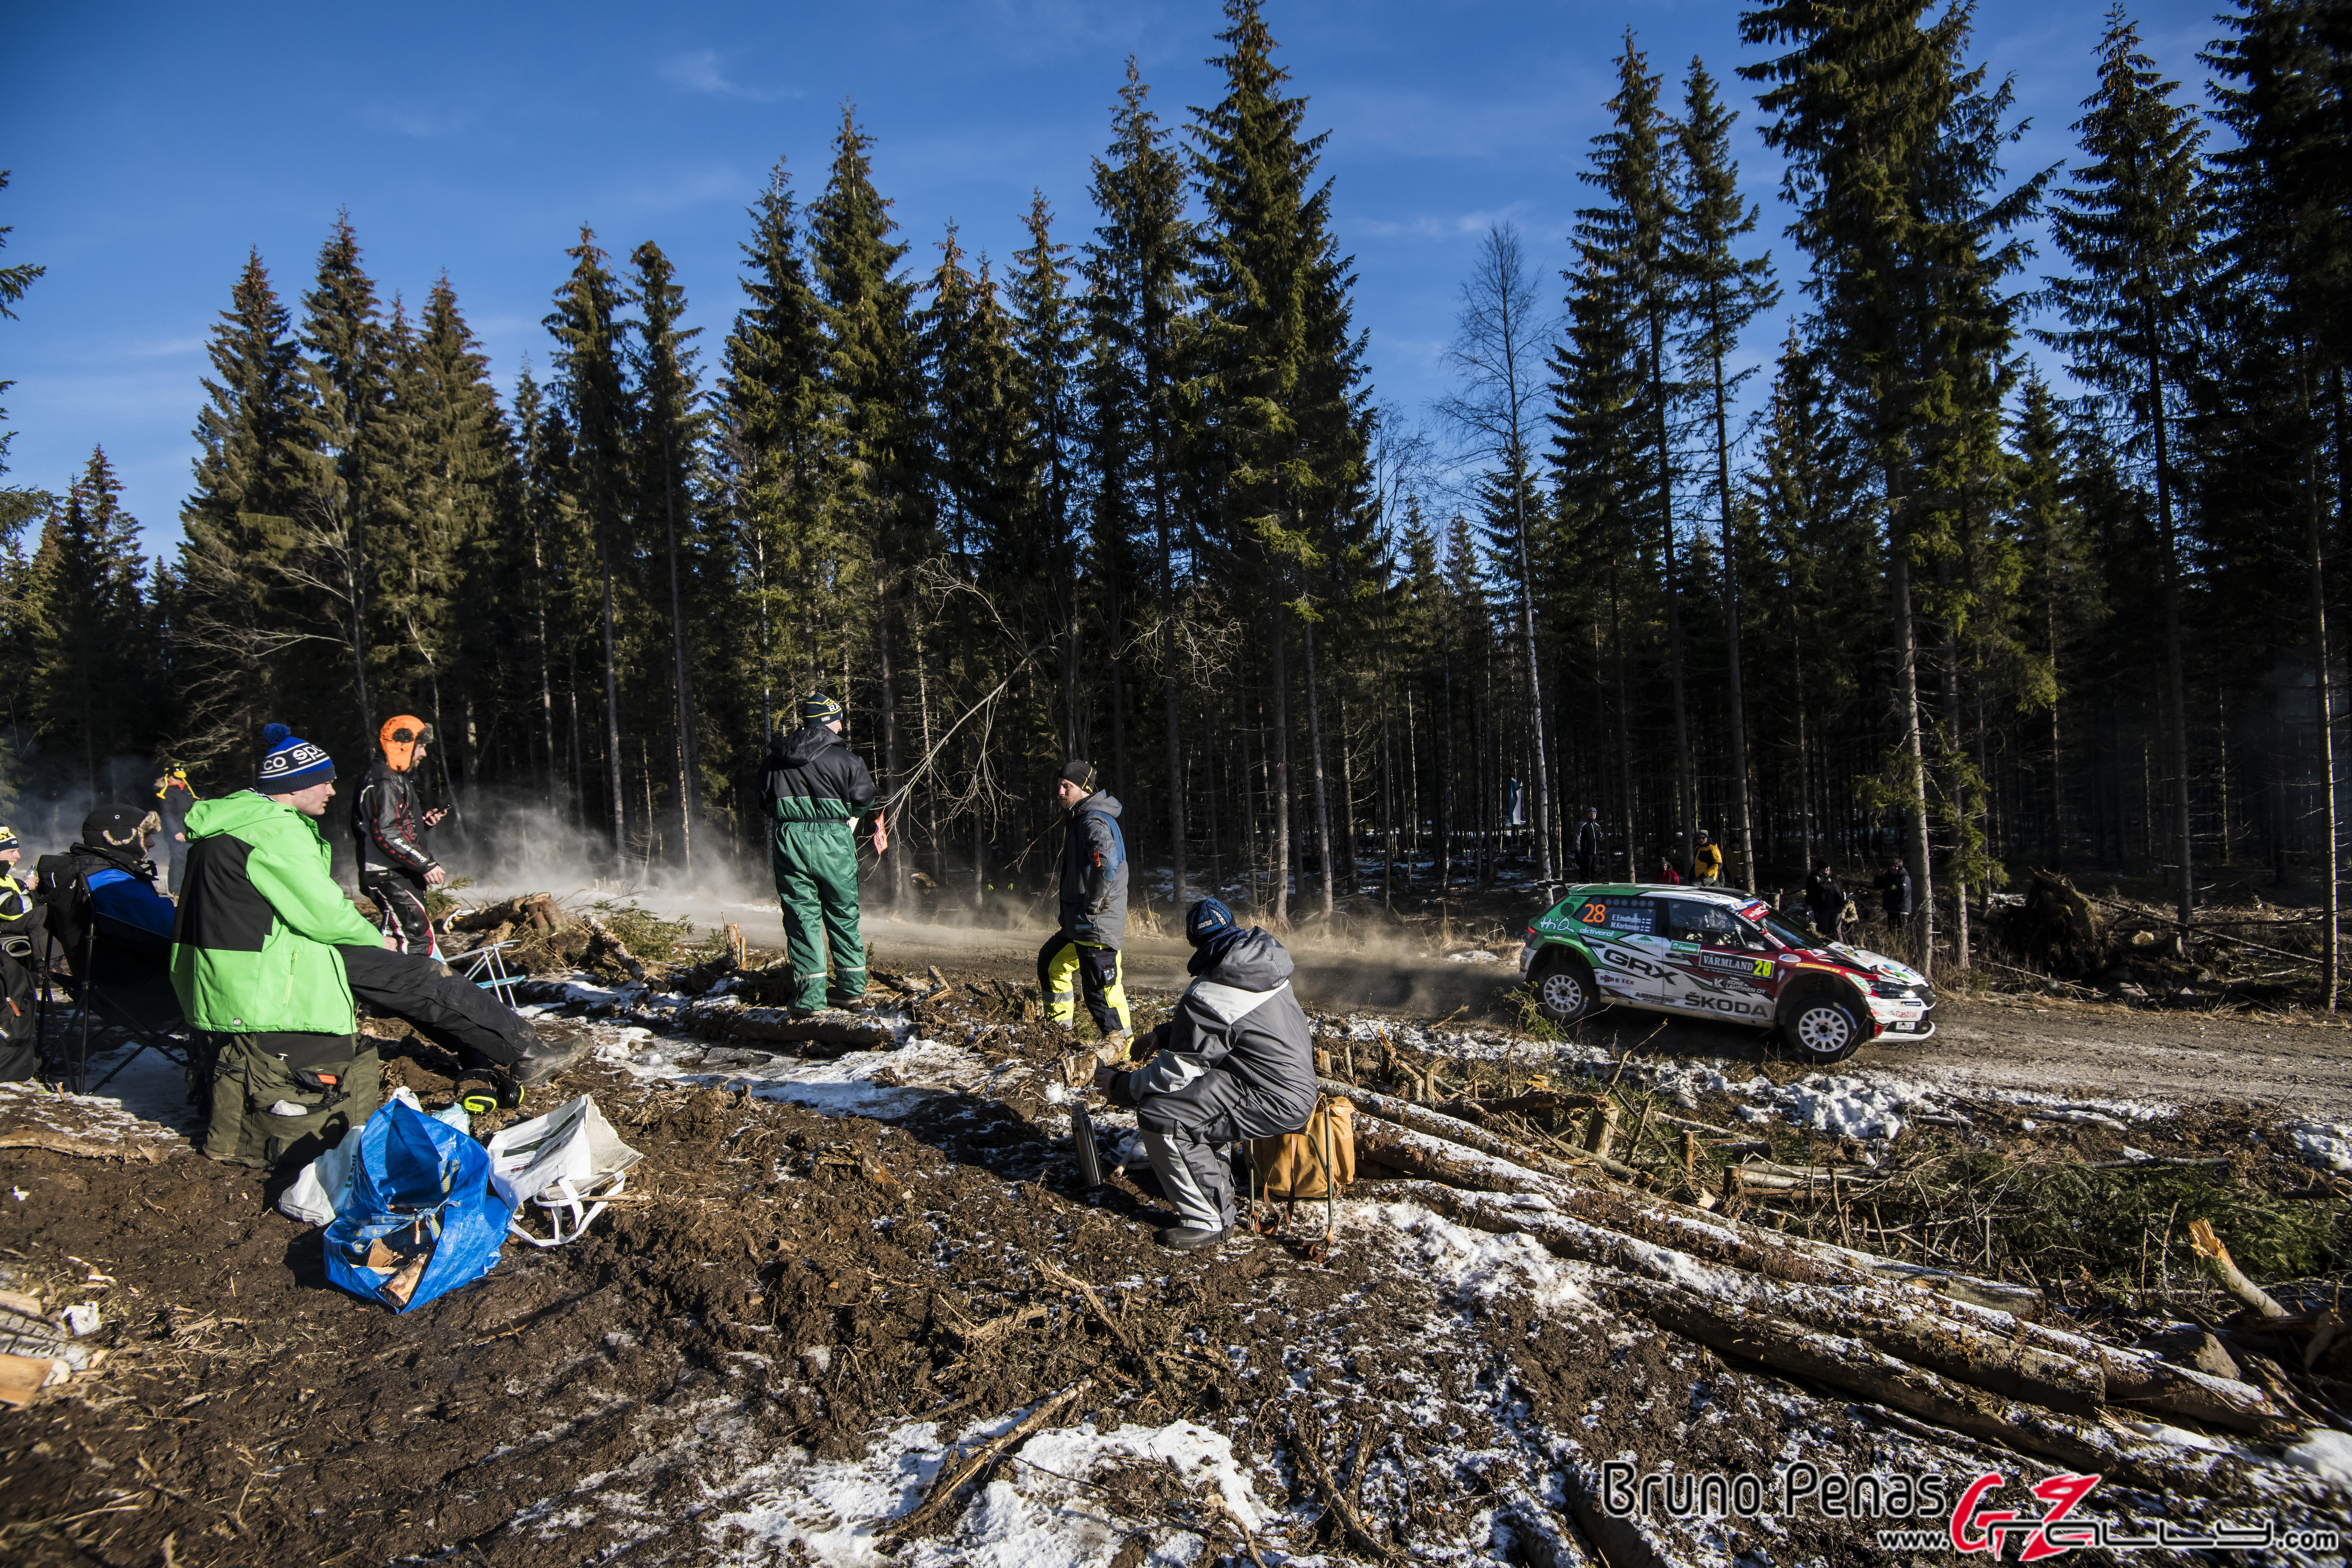 Rally Suecia WRC 2020 - Bruno Penas